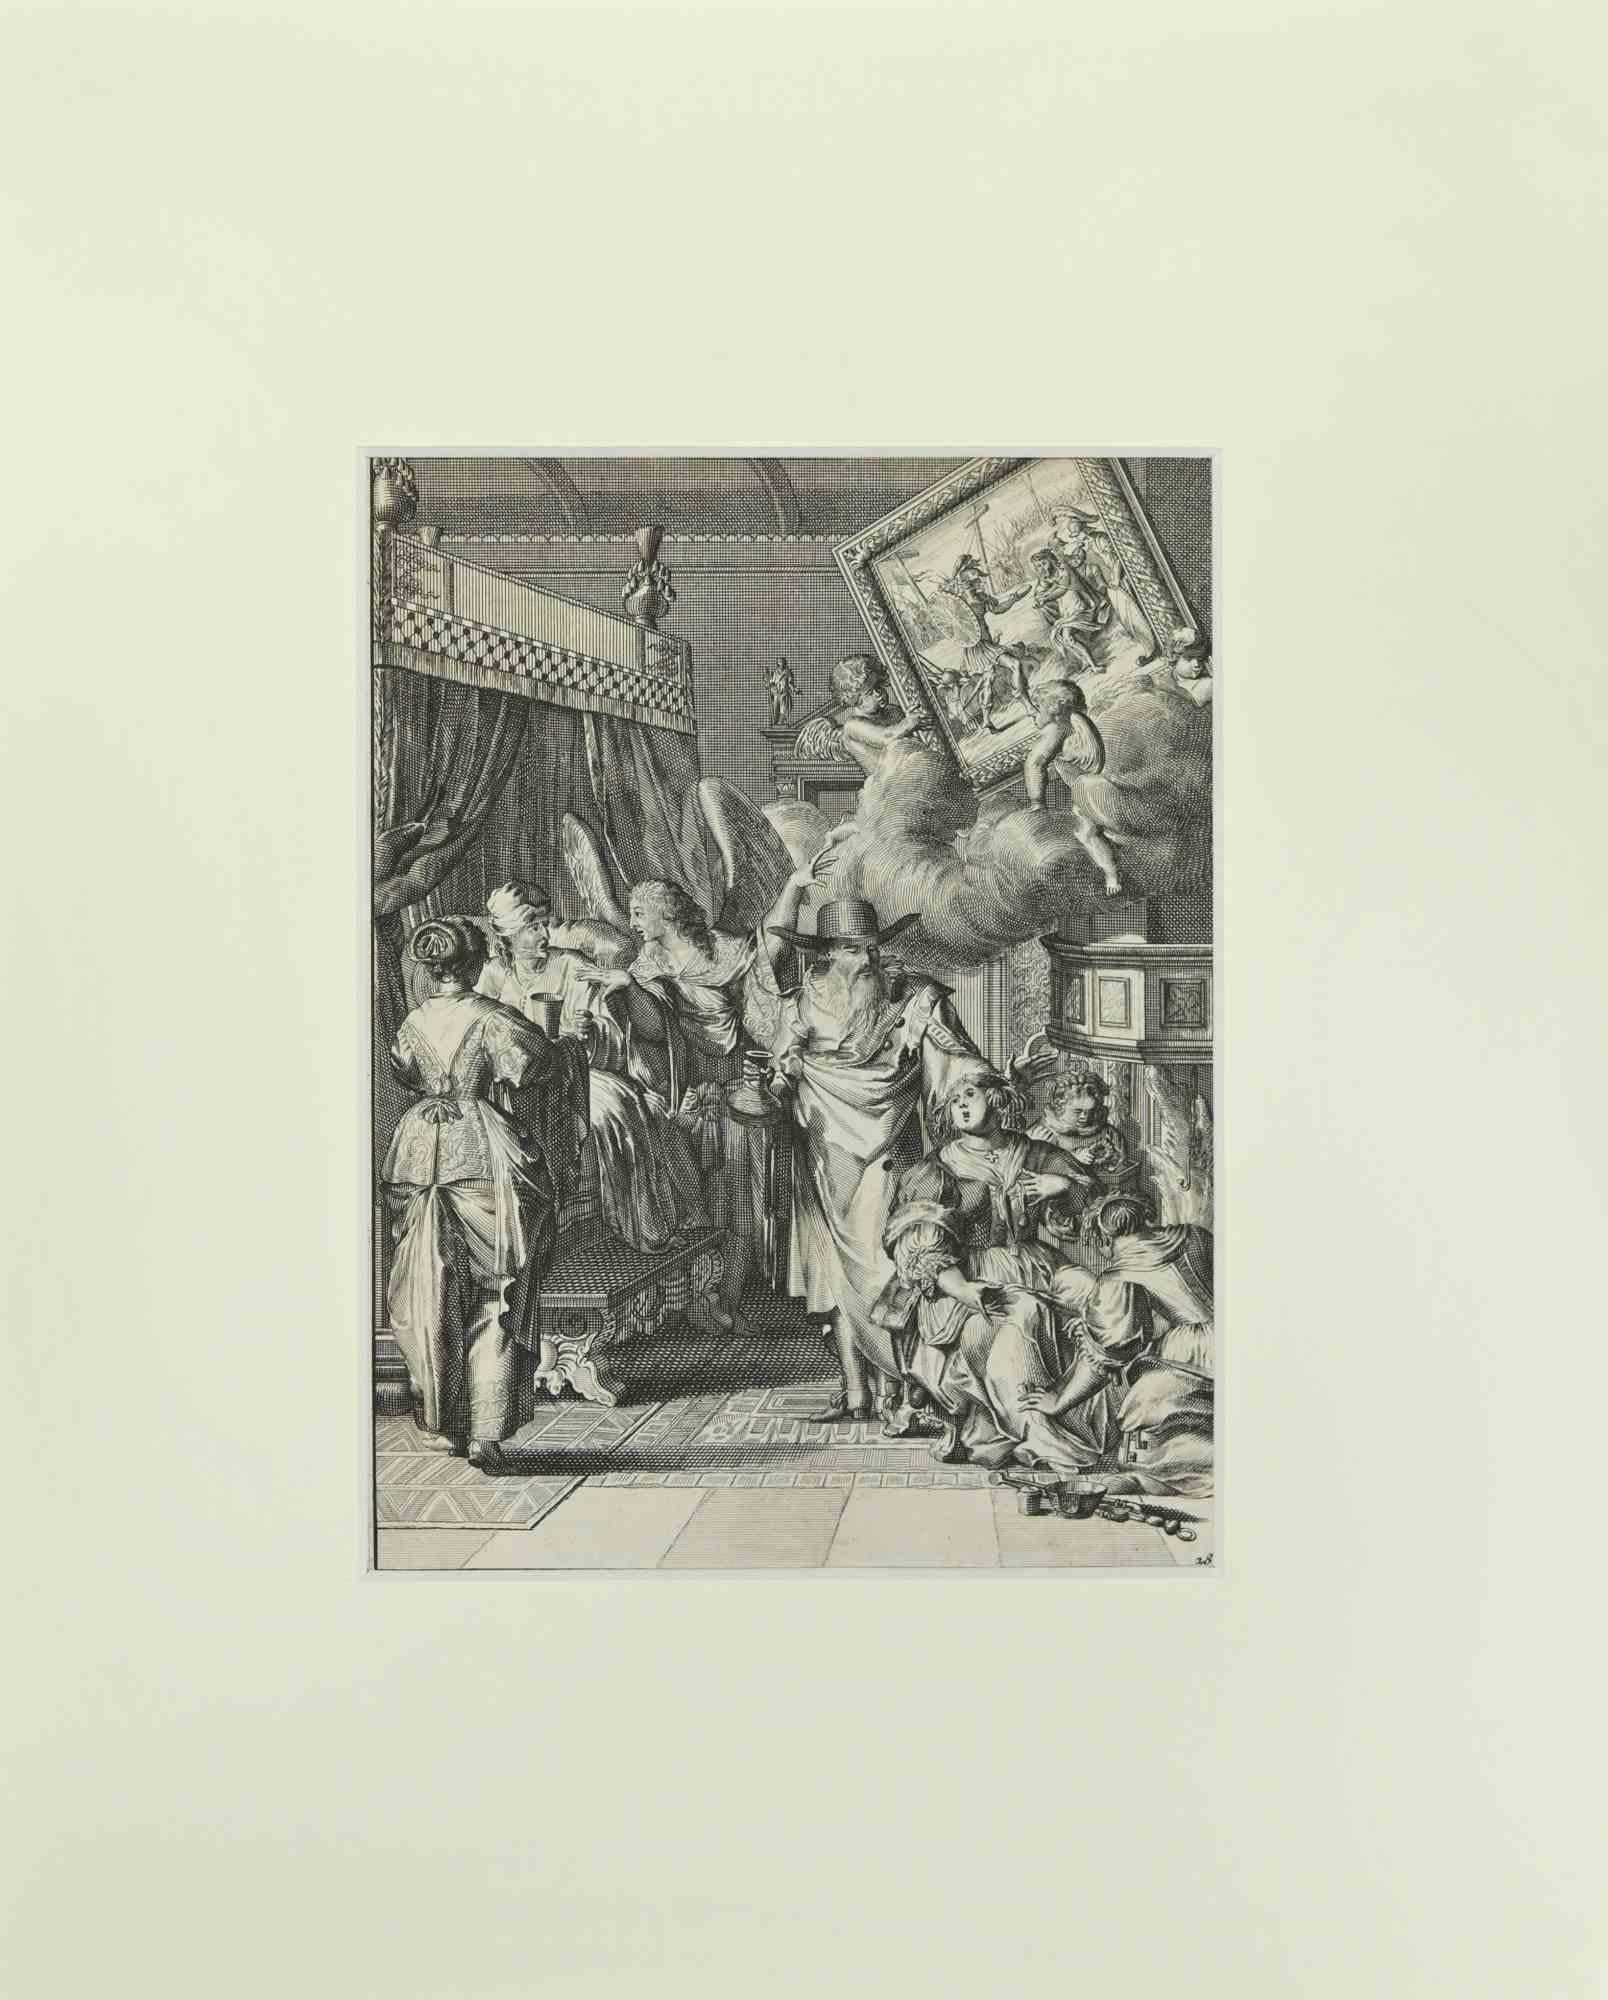 La Manière de se Bien Preparer à La Mort est une gravure de Romeyn de Hooghe tirée de la Suite de Chertablon de la Vigne, La manière de se bien preparer à la mort. Anvers : Gallet 1700. 

Bonnes conditions.

L'œuvre appartient à l'édition française